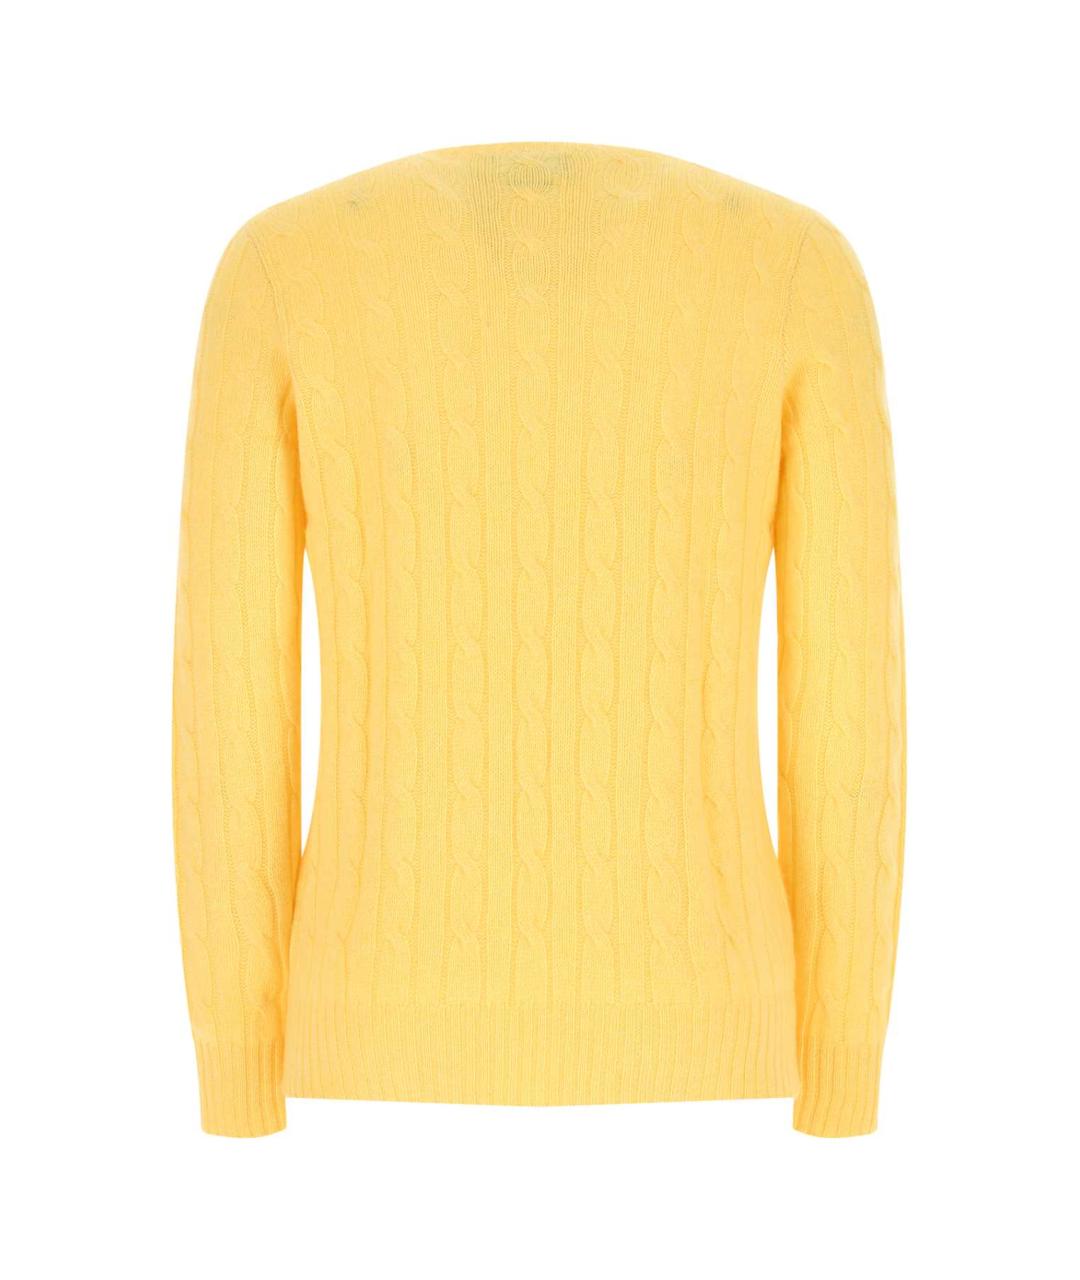 POLO RALPH LAUREN Желтый кашемировый джемпер / свитер, фото 2